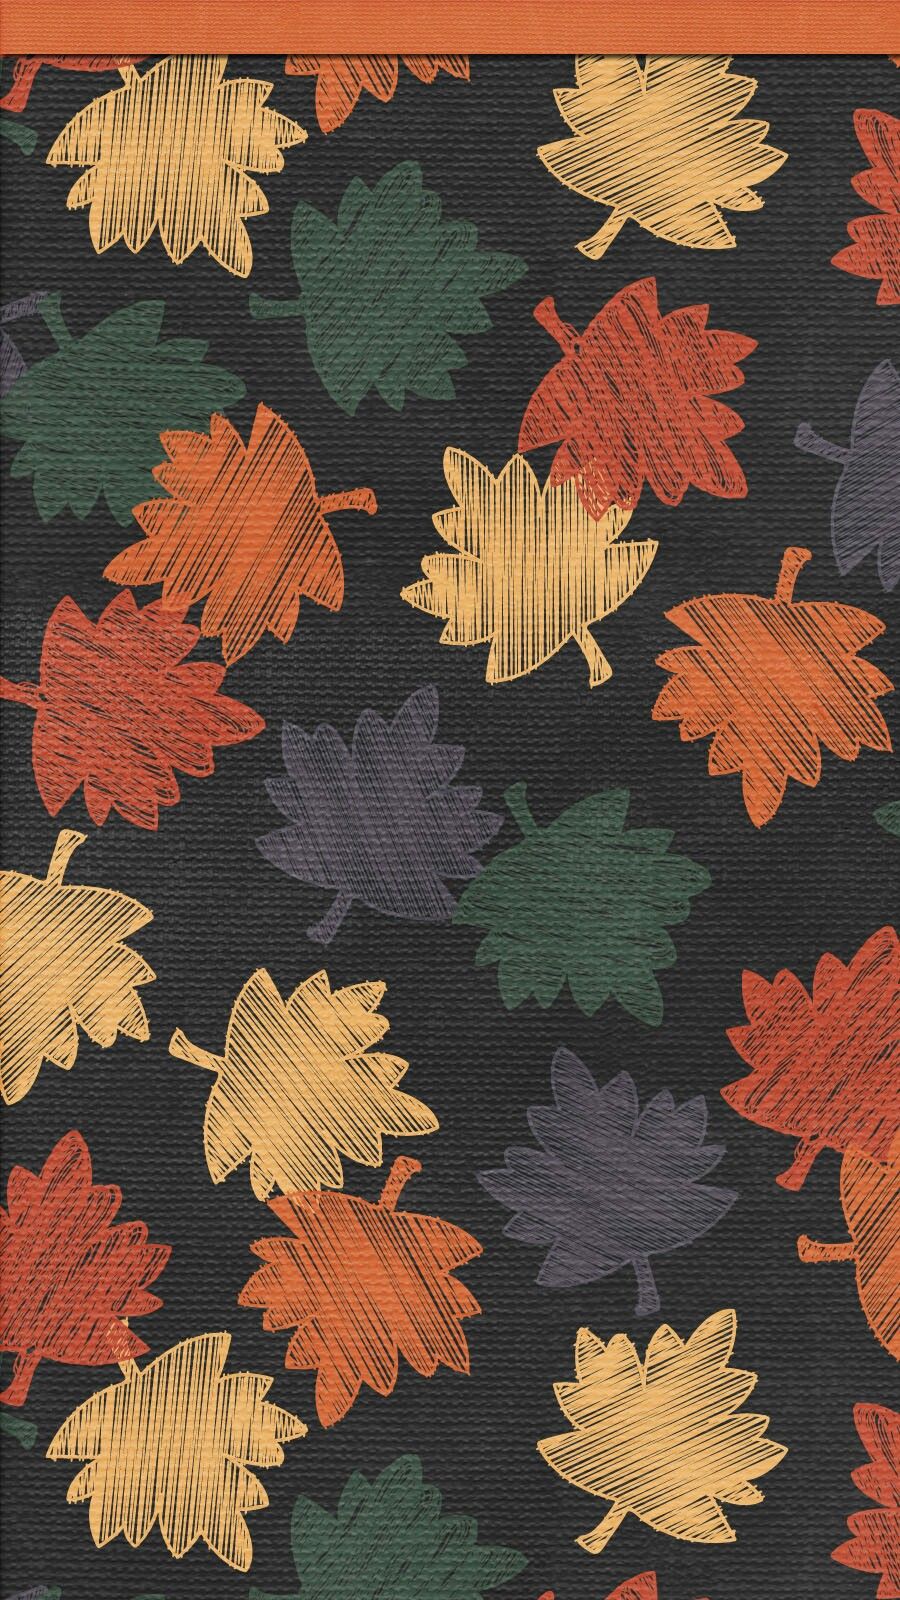 アンドロイドのための秋の壁紙,葉,オレンジ,赤,木,カエデの葉